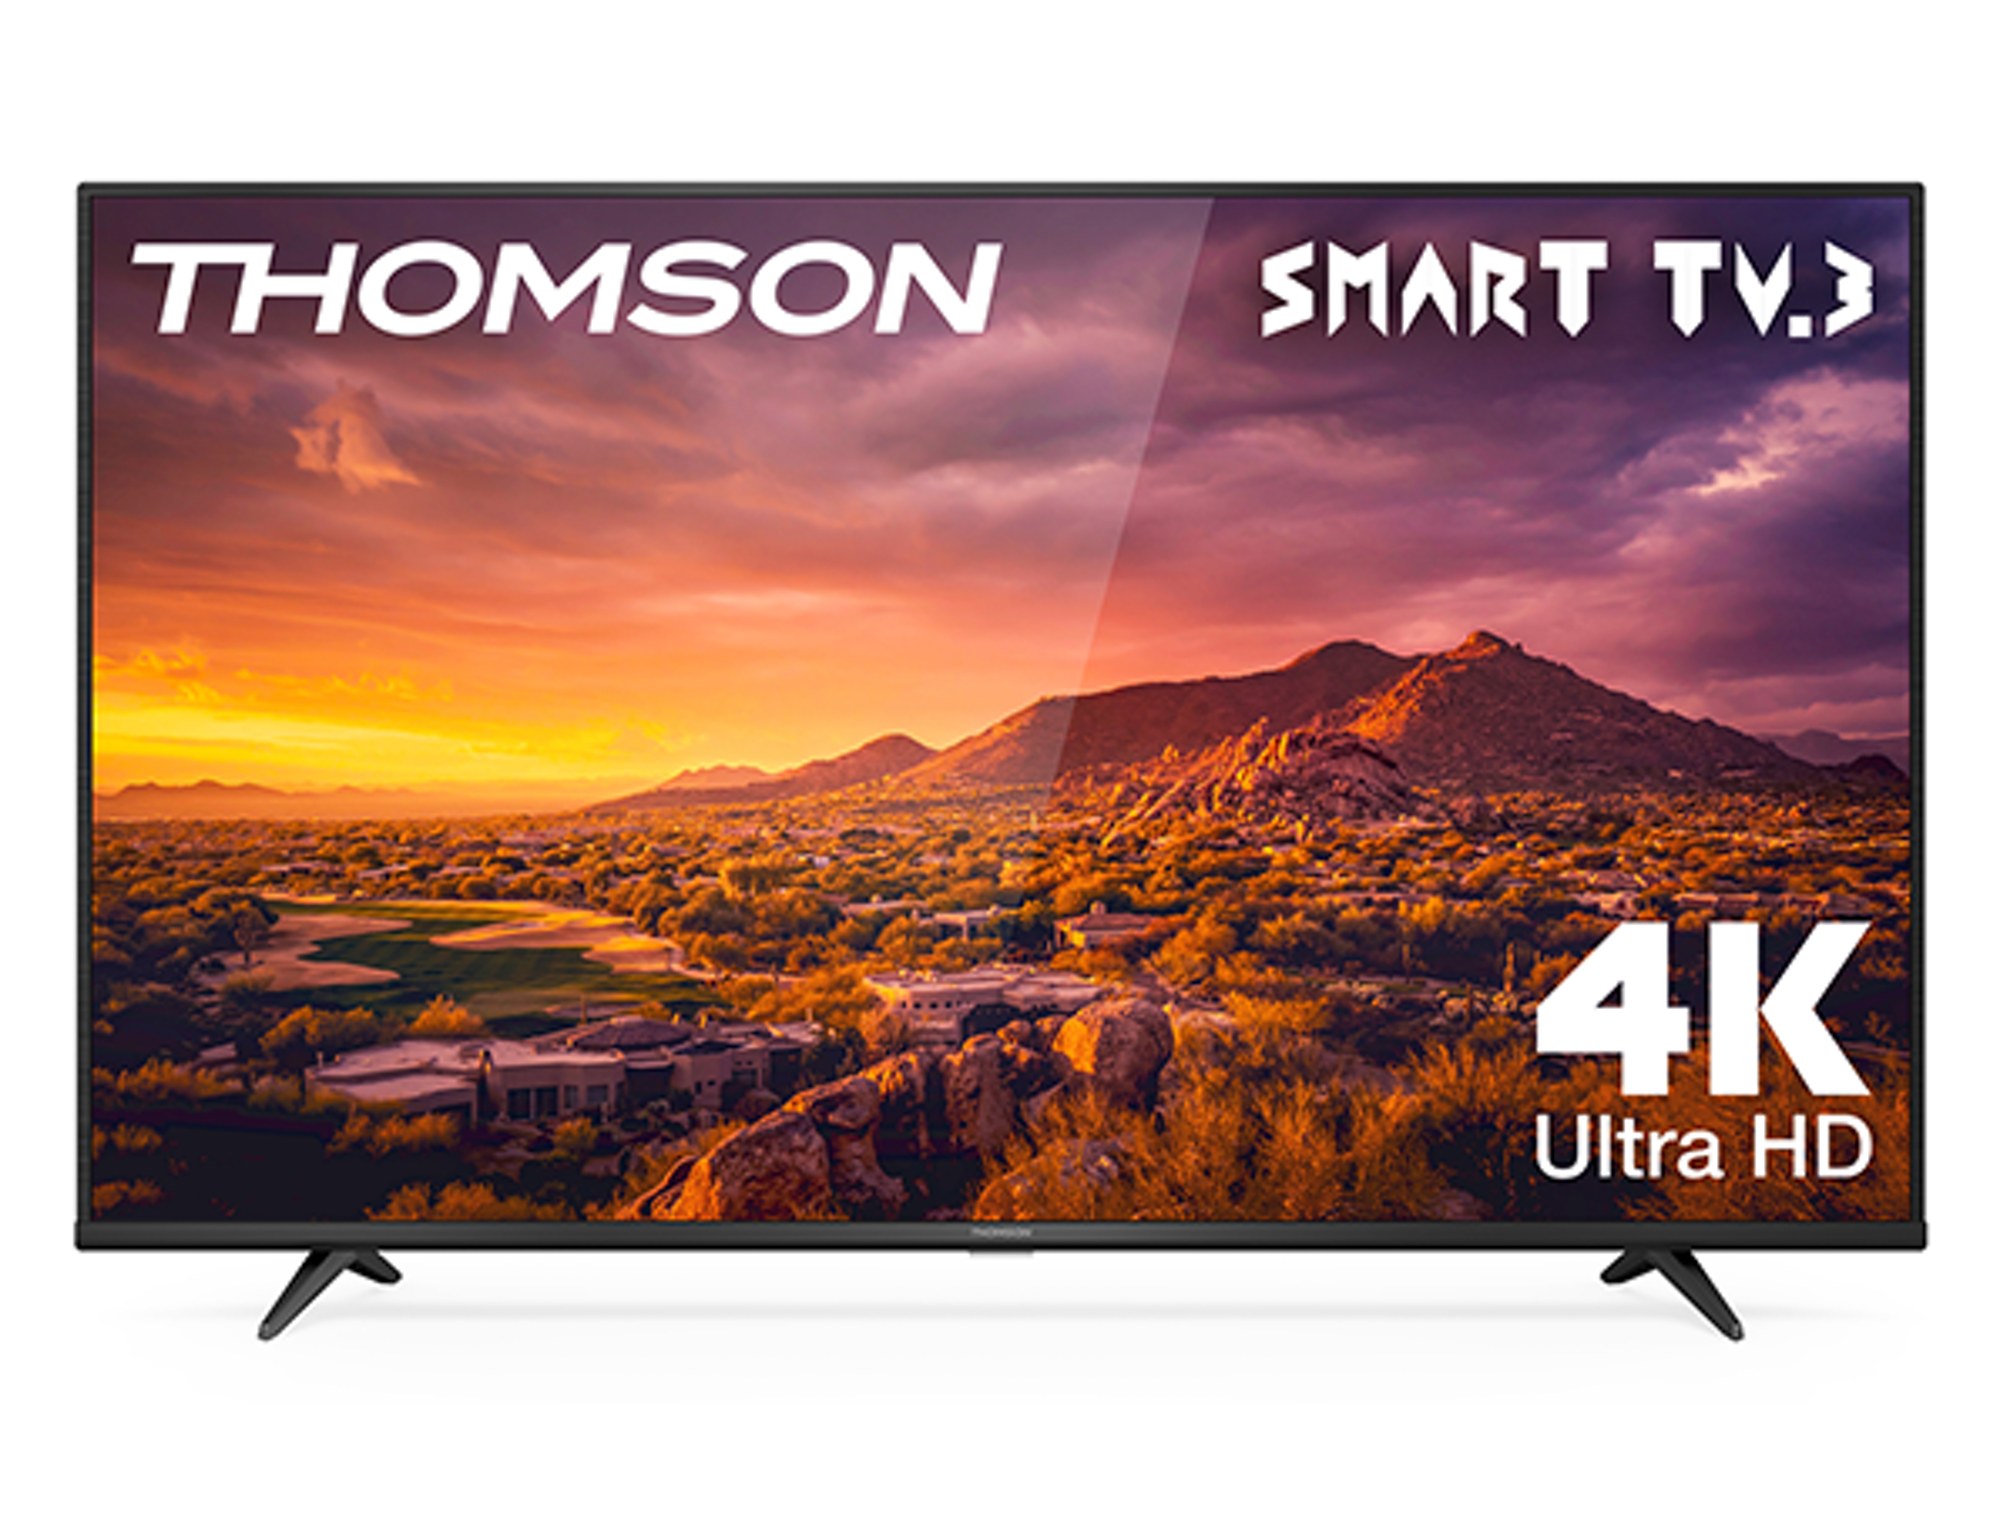 Thomson G63 Series 50UG6300 TV